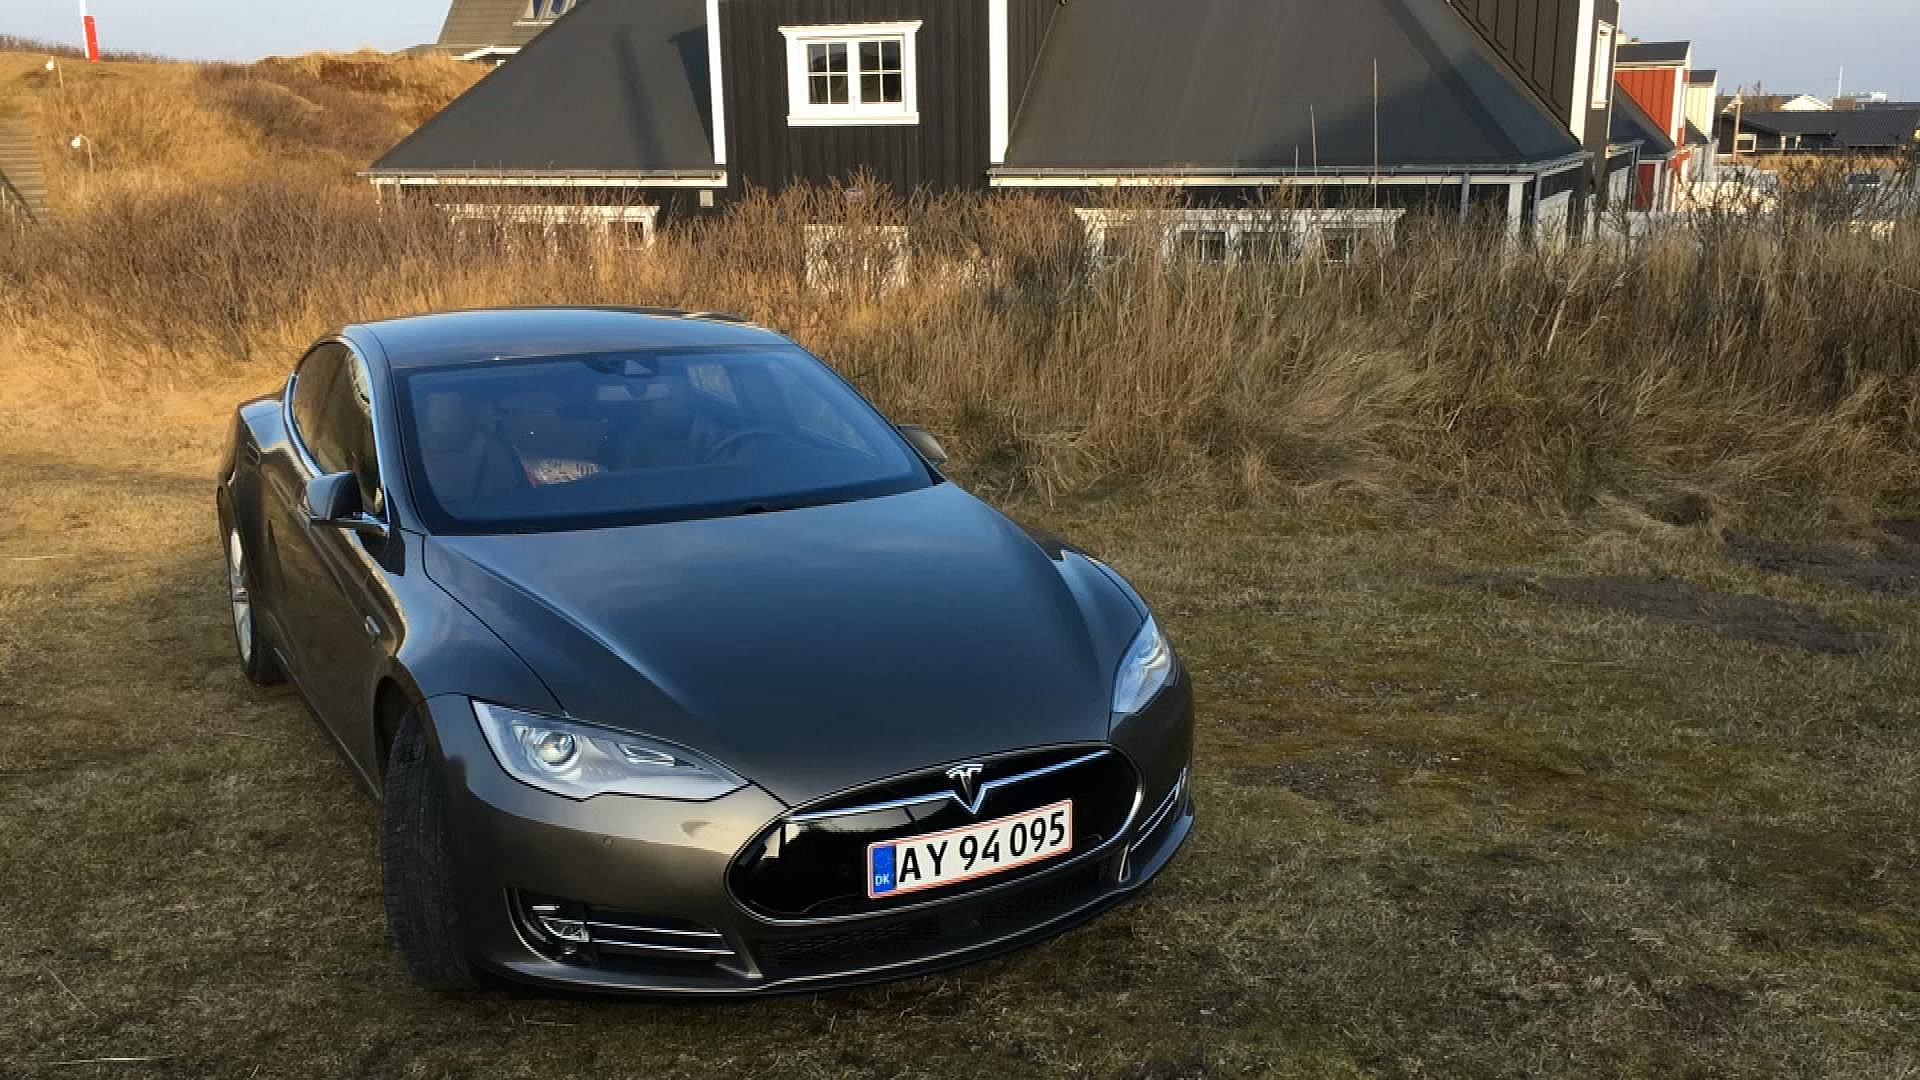 det er smukt stemme nødsituation Tesla-ejer glemte sporingsudstyr | TV MIDTVEST